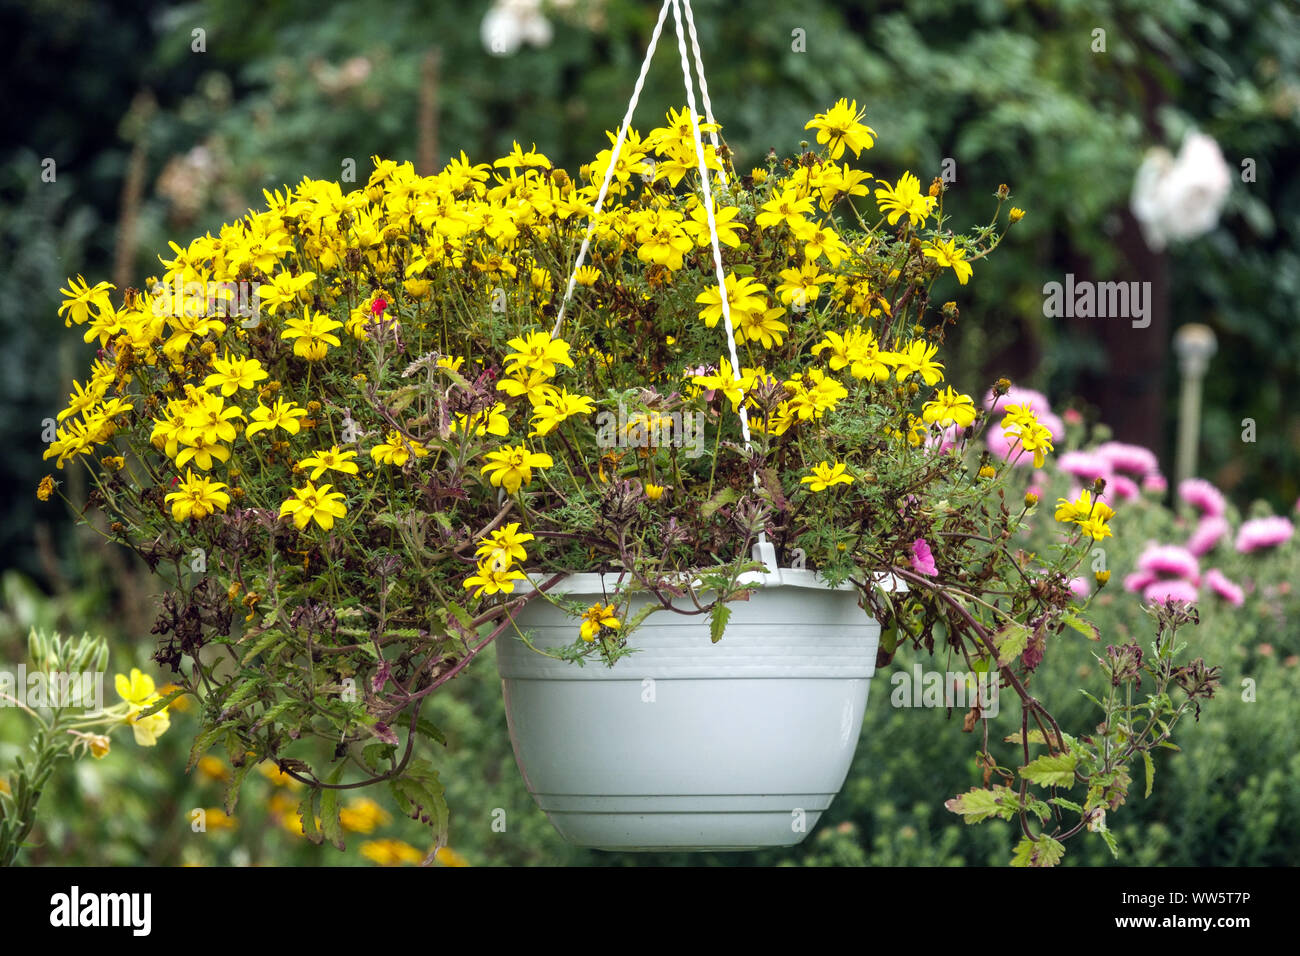 Flores en maceta colgante fotografías imágenes de alta resolución - Alamy